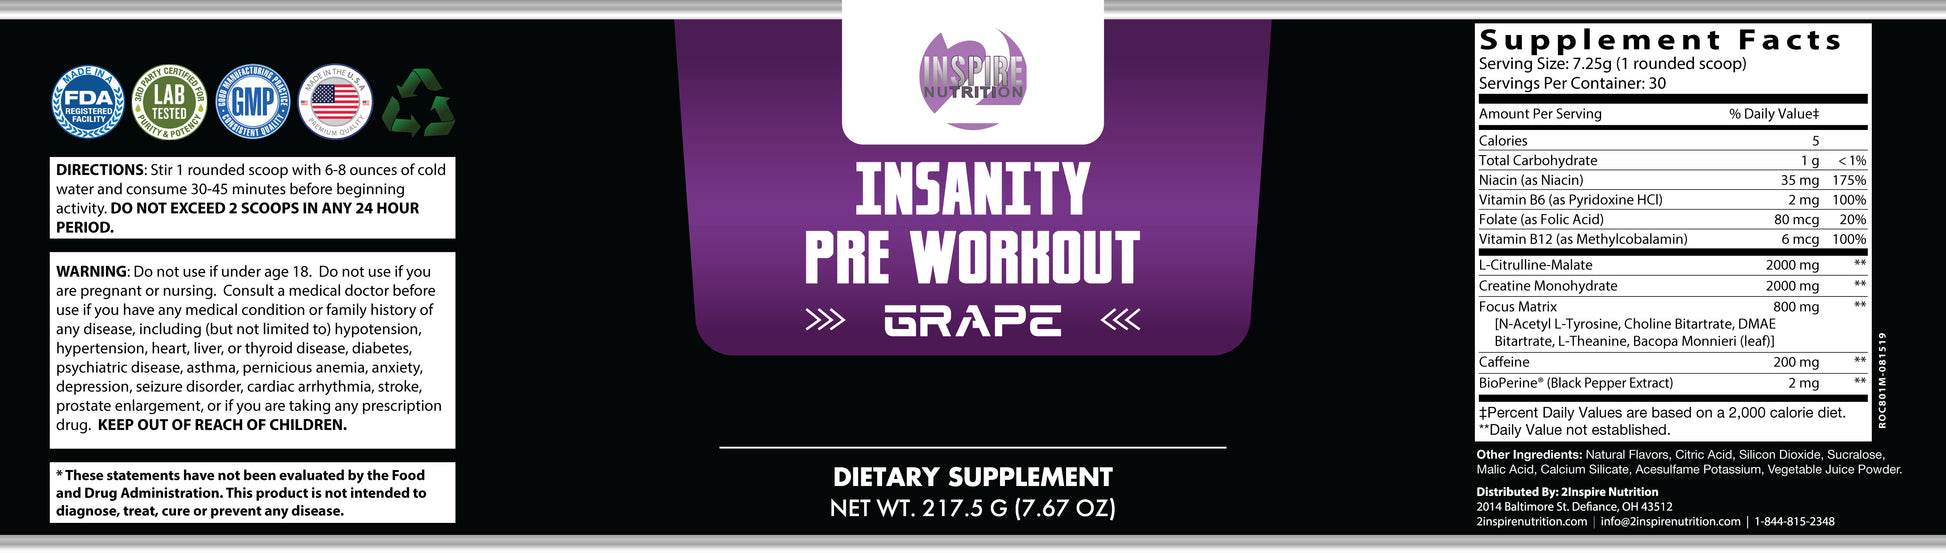 Insanity Pre-Workout-Grape Wrapper